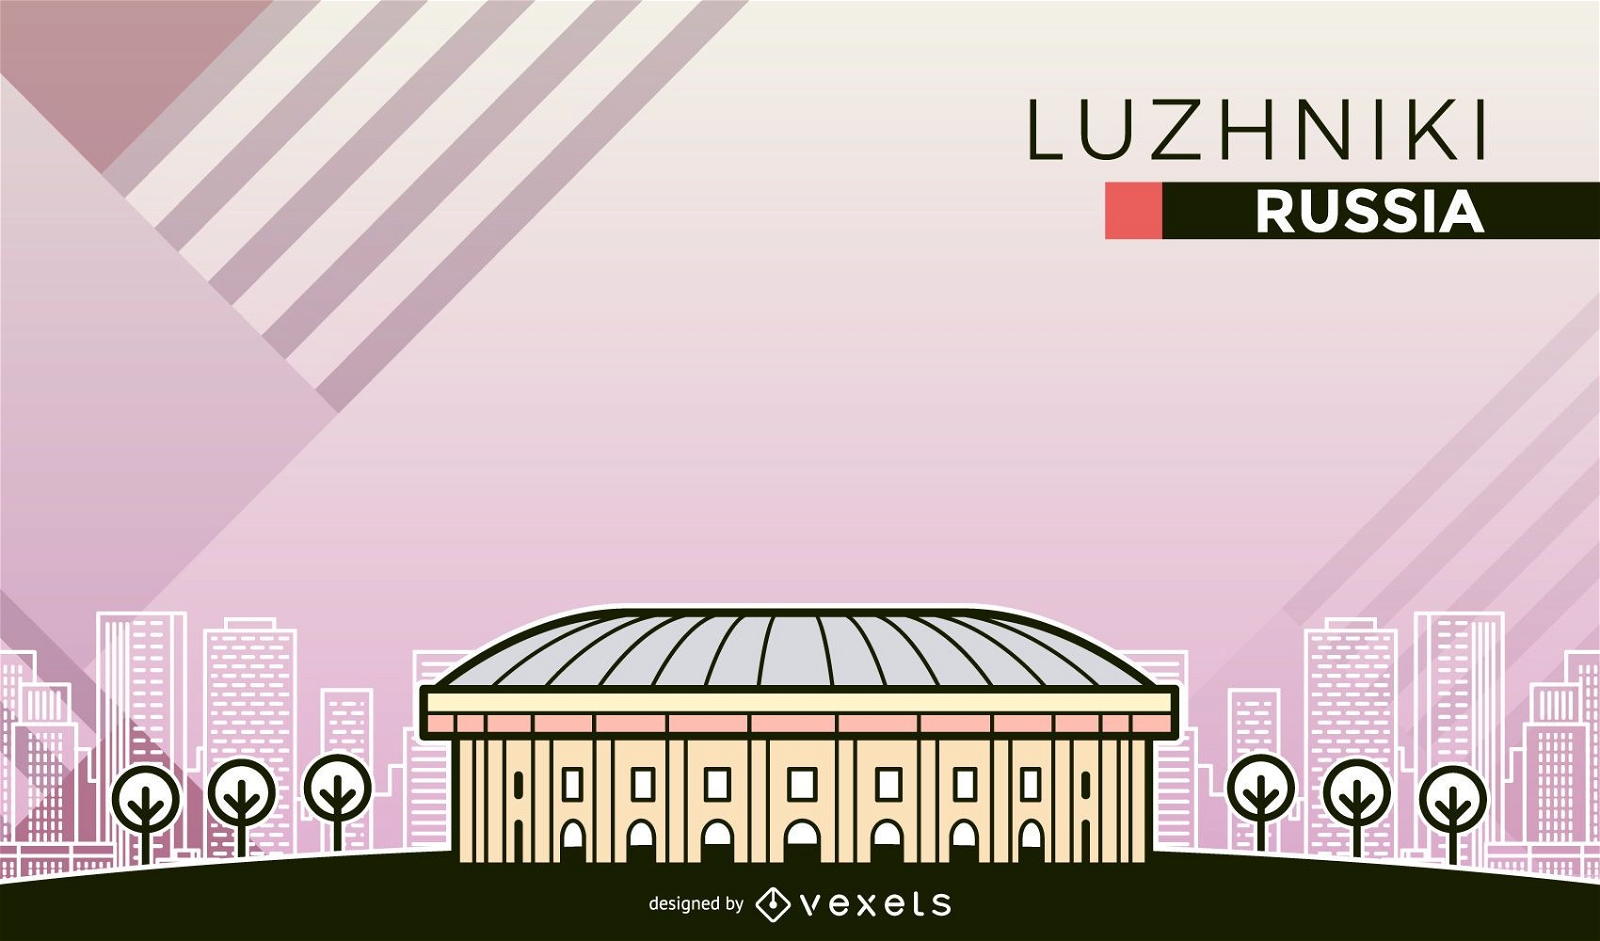 Ilustraci?n de dibujos animados del estadio Luzhniki